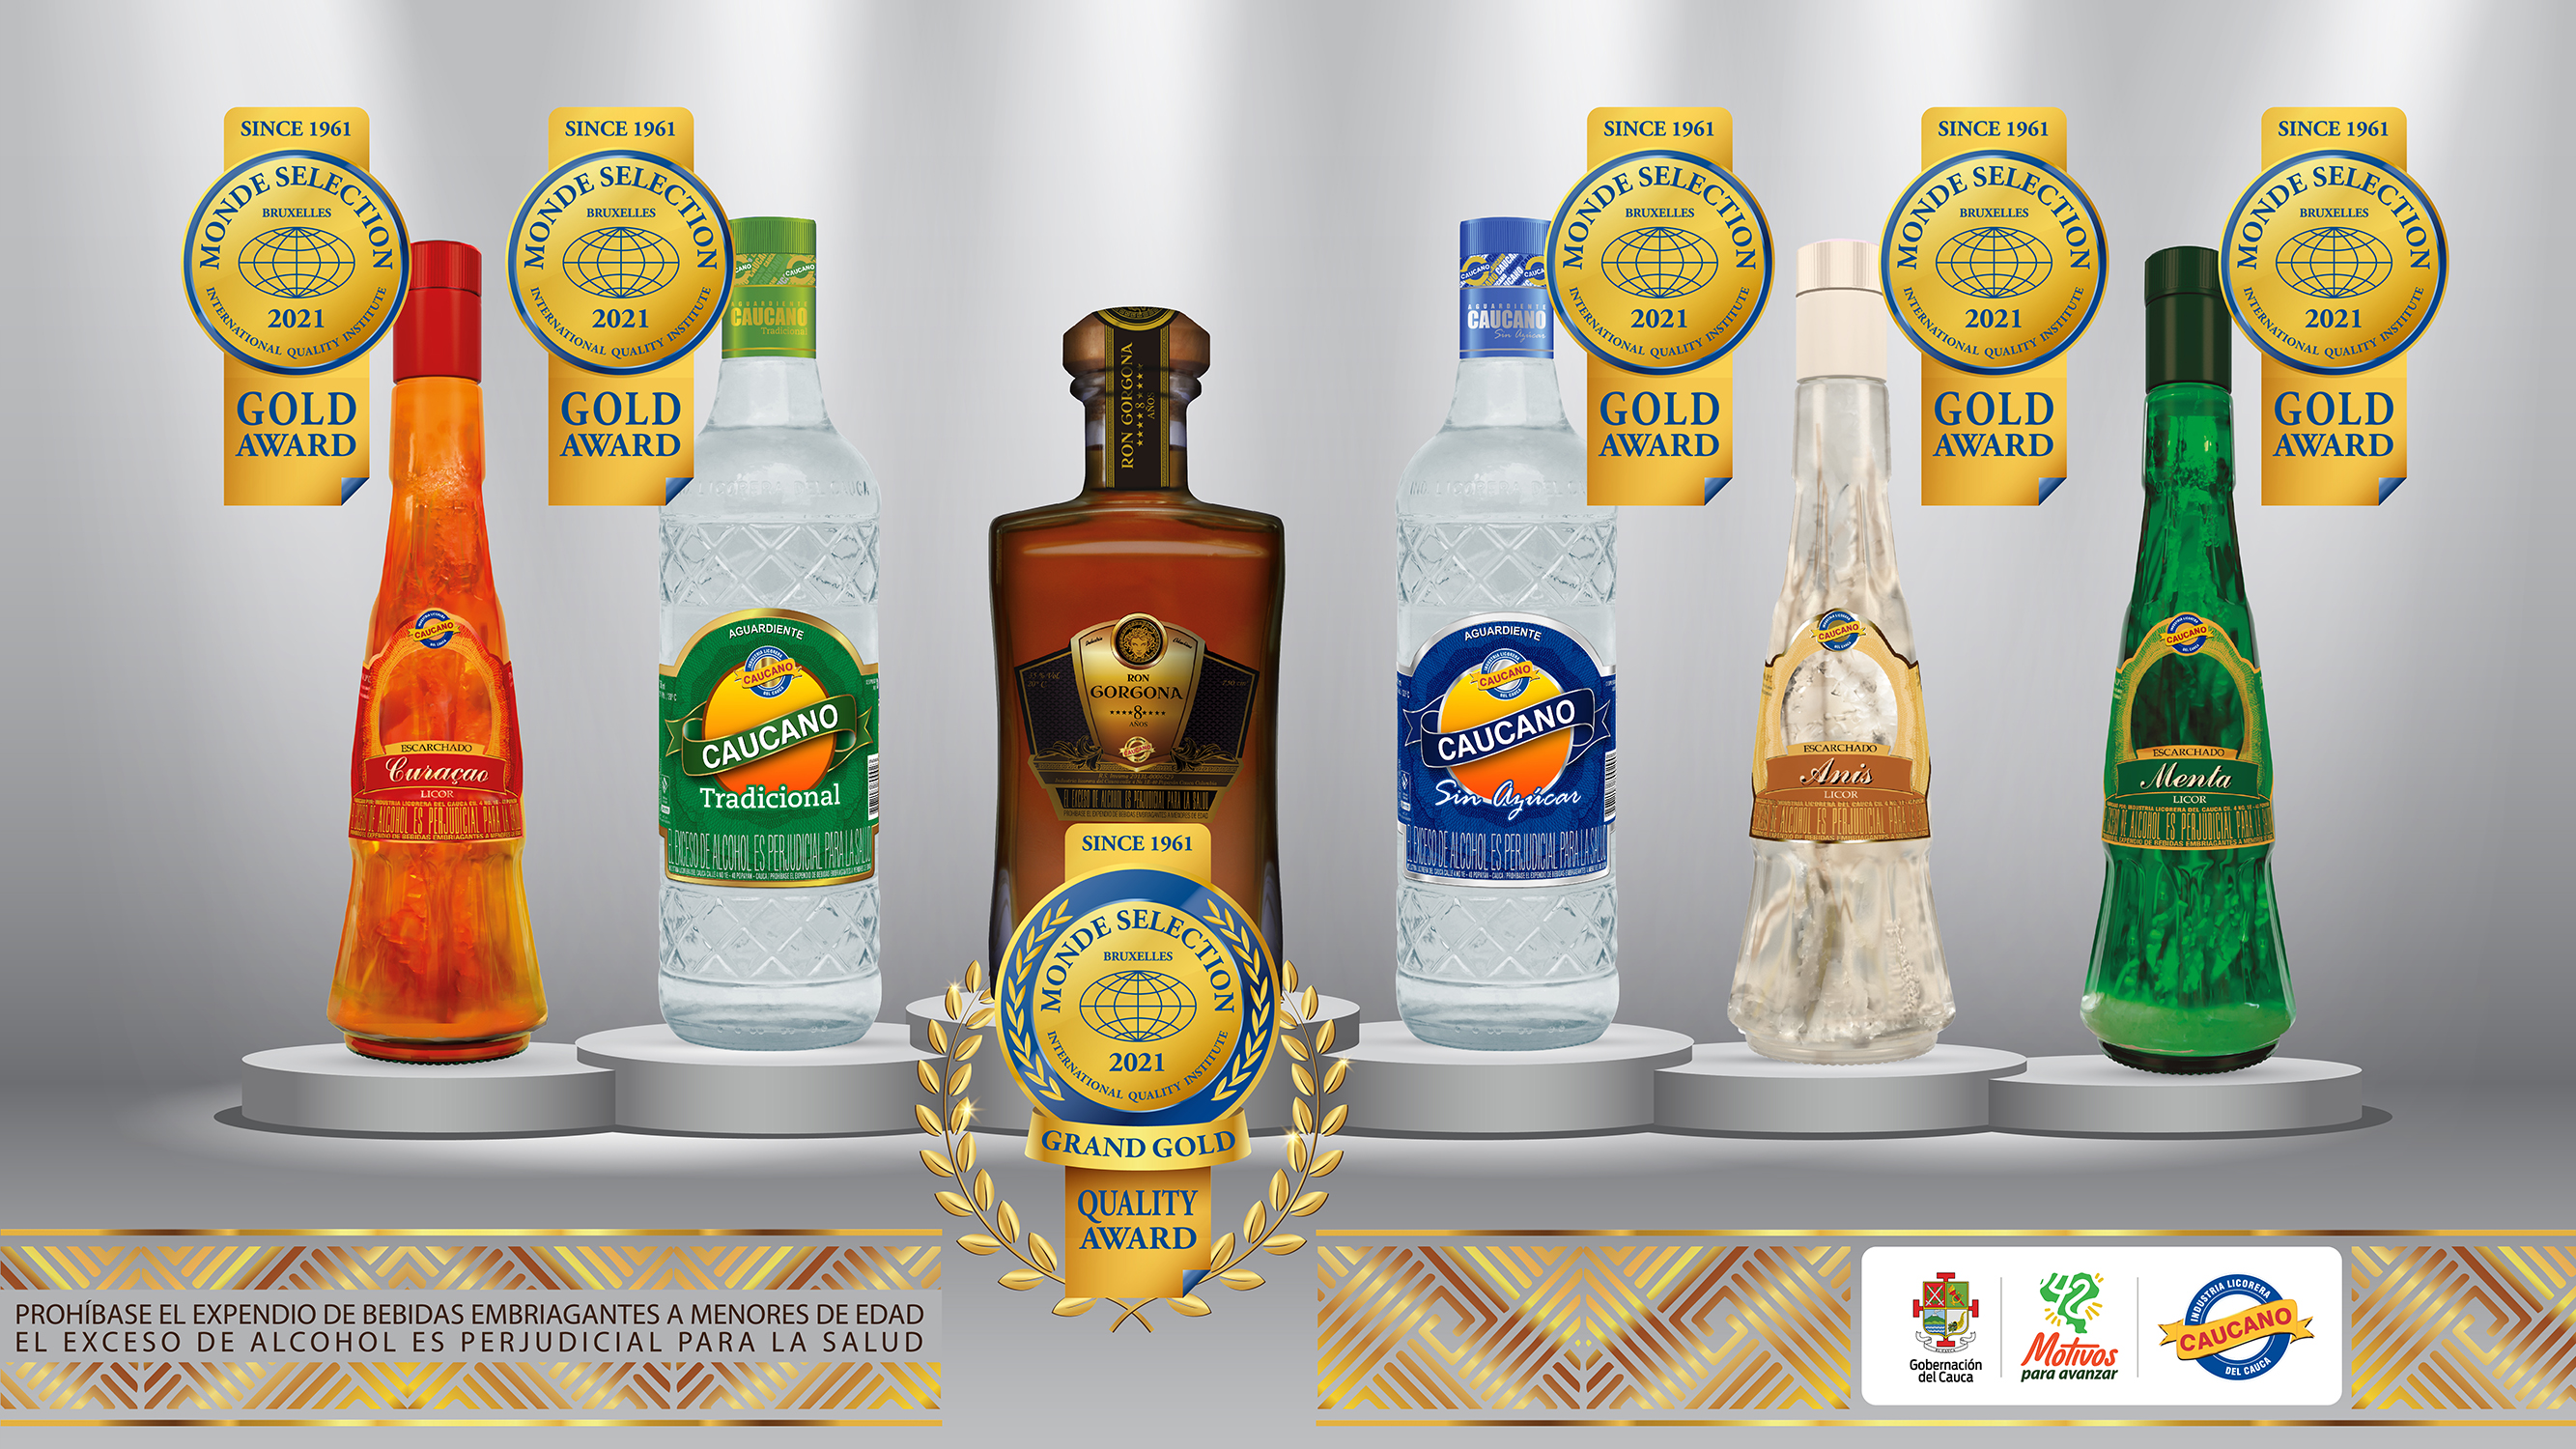                                              Industria Licorera del Cauca nuevamente premiada en los MONDE SELECTION de Bélgica
                                            